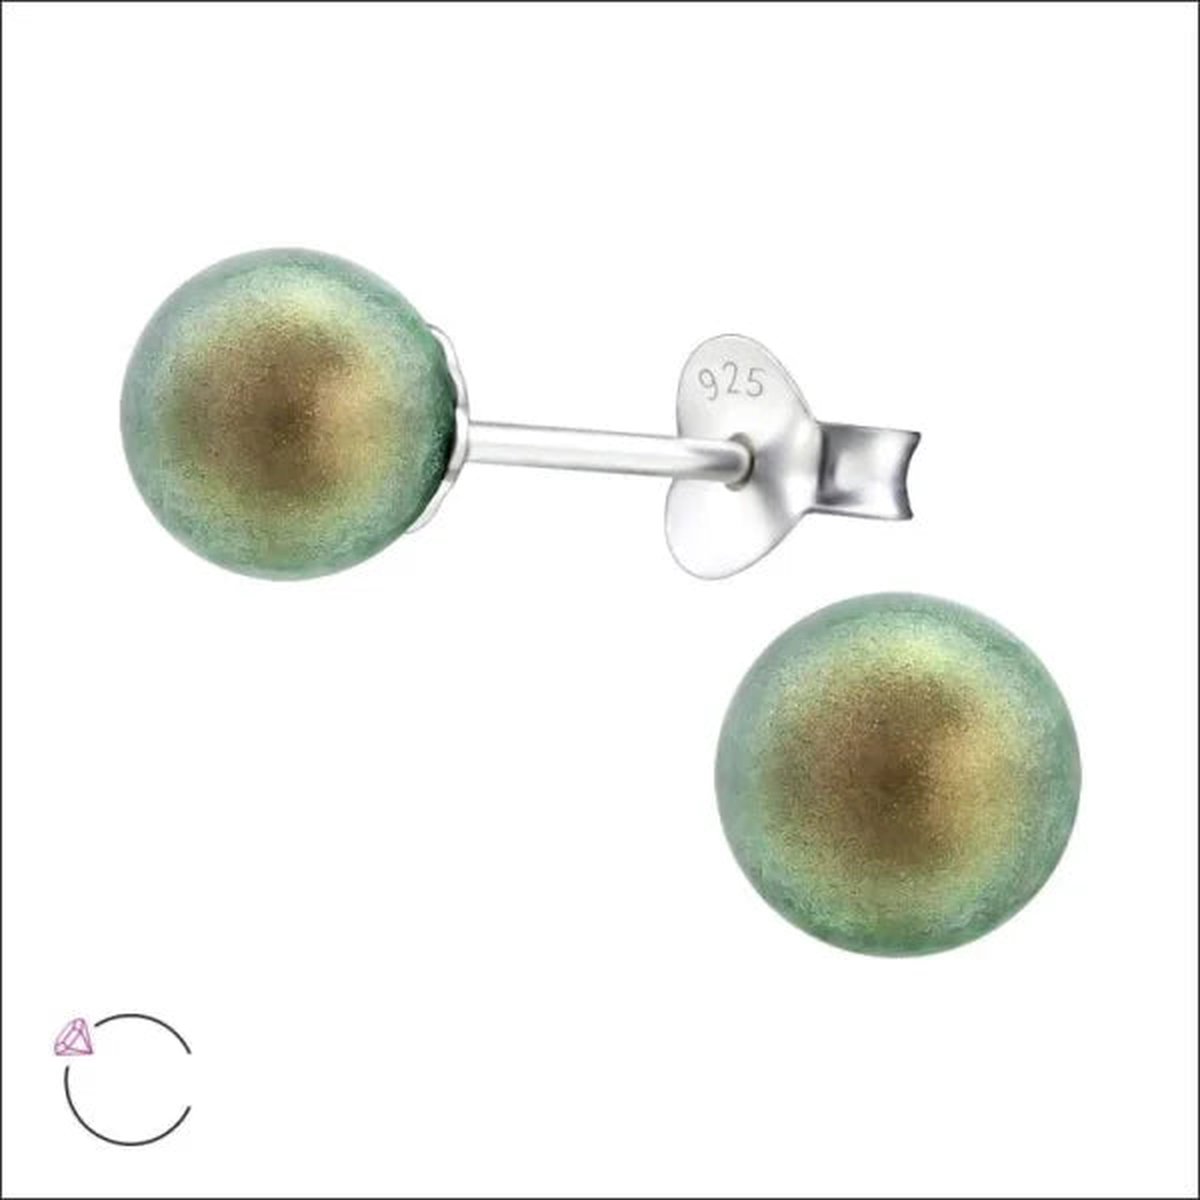 Aramat jewels ® - Zilveren pareloorbellen iriserend groen 925 zilver 6mm